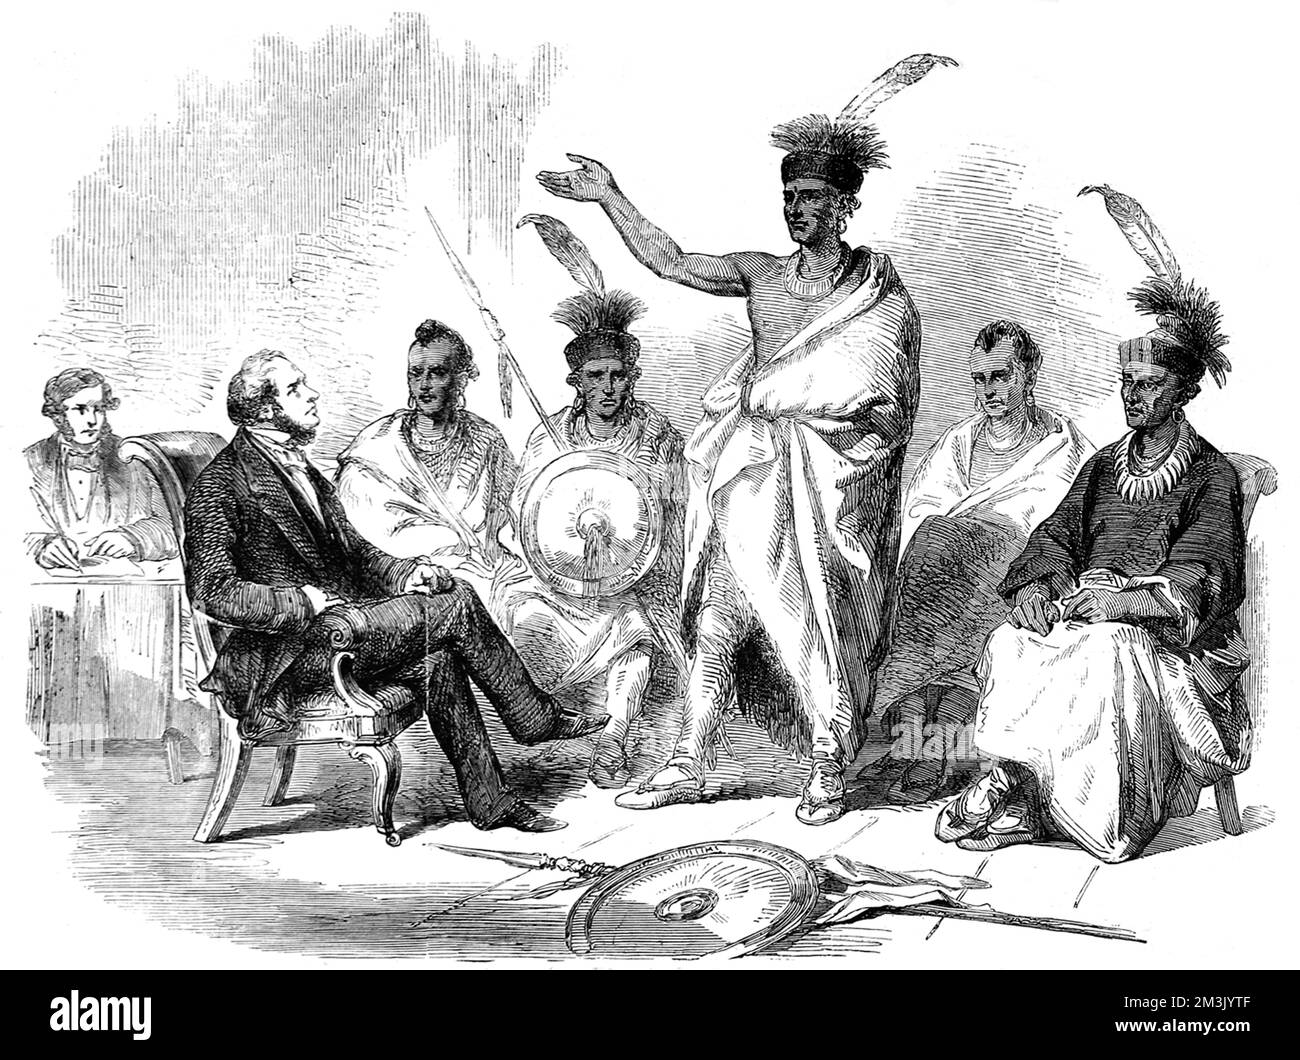 Die indianischen KAW appellieren an den US-Kommissar für indische Angelegenheiten, ihr Land vor Siedlern zu schützen, 1857. Die Kaw, die in Kansas lebten, tragen mohikanische Frisuren, Kopfschmuck, Schals und runde Schilde. Stockfoto